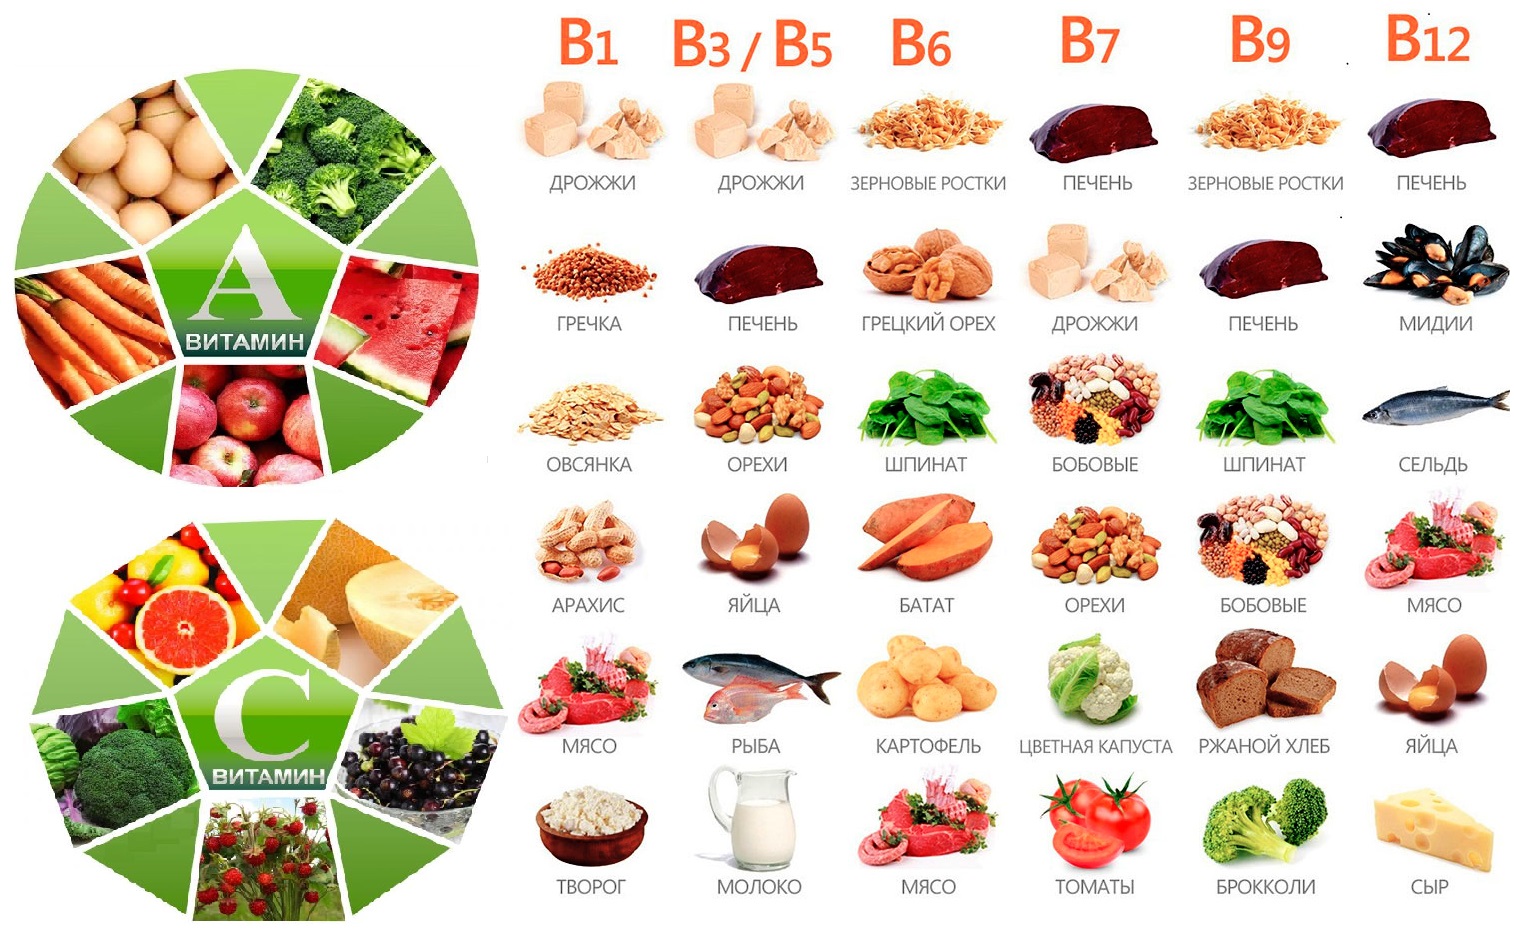 Витамины группы в много в. В каких продуктах содержится витамины группы b. Продукты содержащие витамин b. Витамин b в каких продуктах содержится больше. Продукты с витамином б.